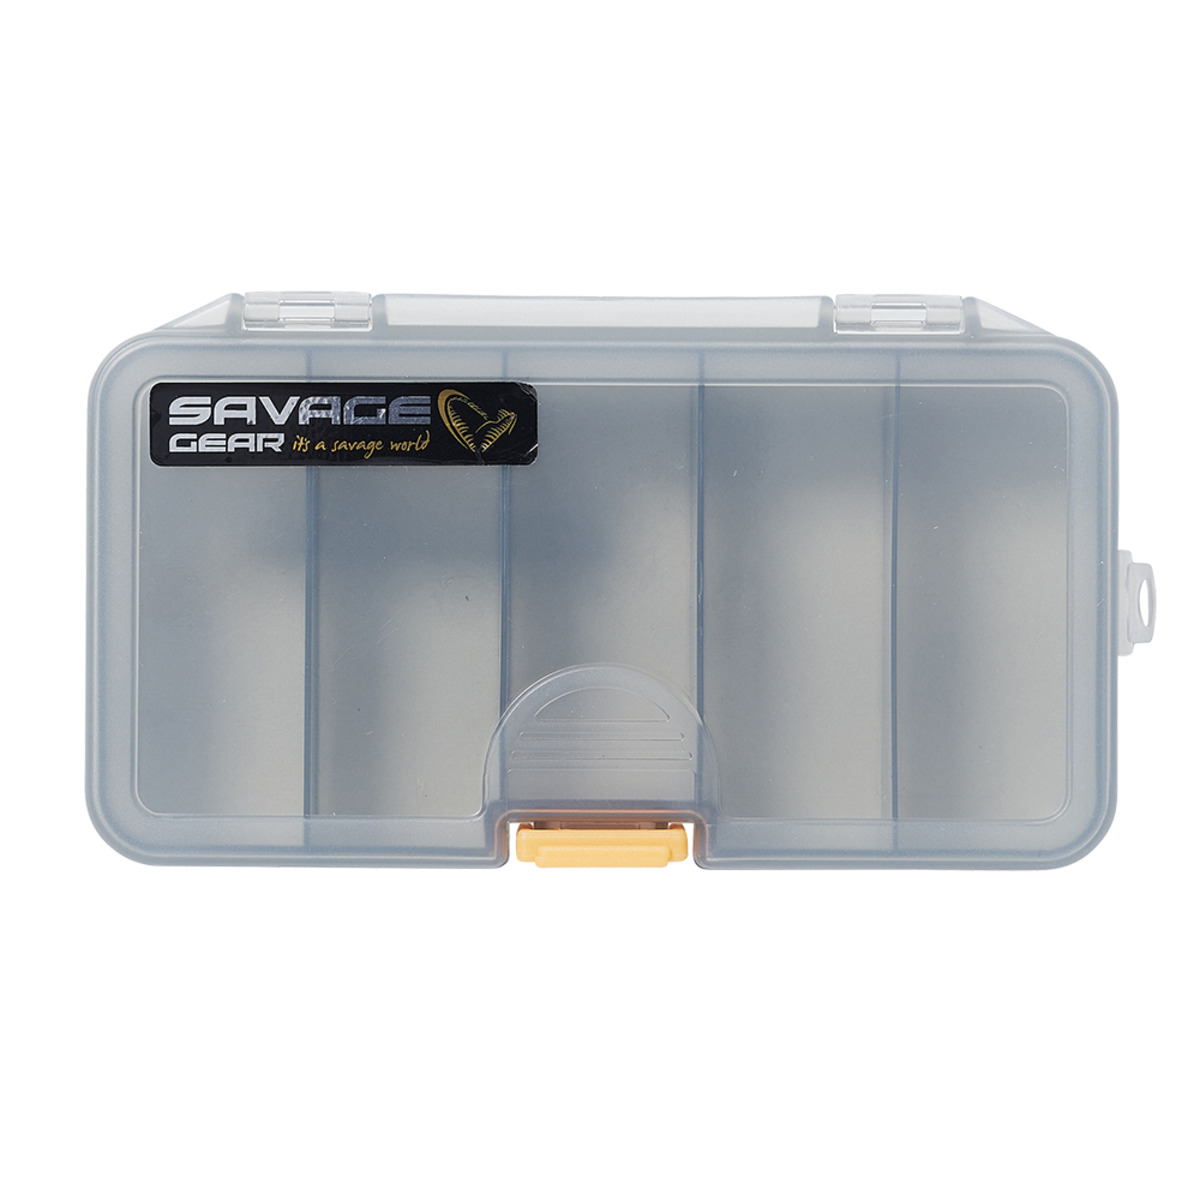 Savage Gear Smoke 13.8x7.7x3.1cm 1 Cassette - LUREBOX 2A SMOKE 16.1X9.1X3.1CM 1 CASSETTE